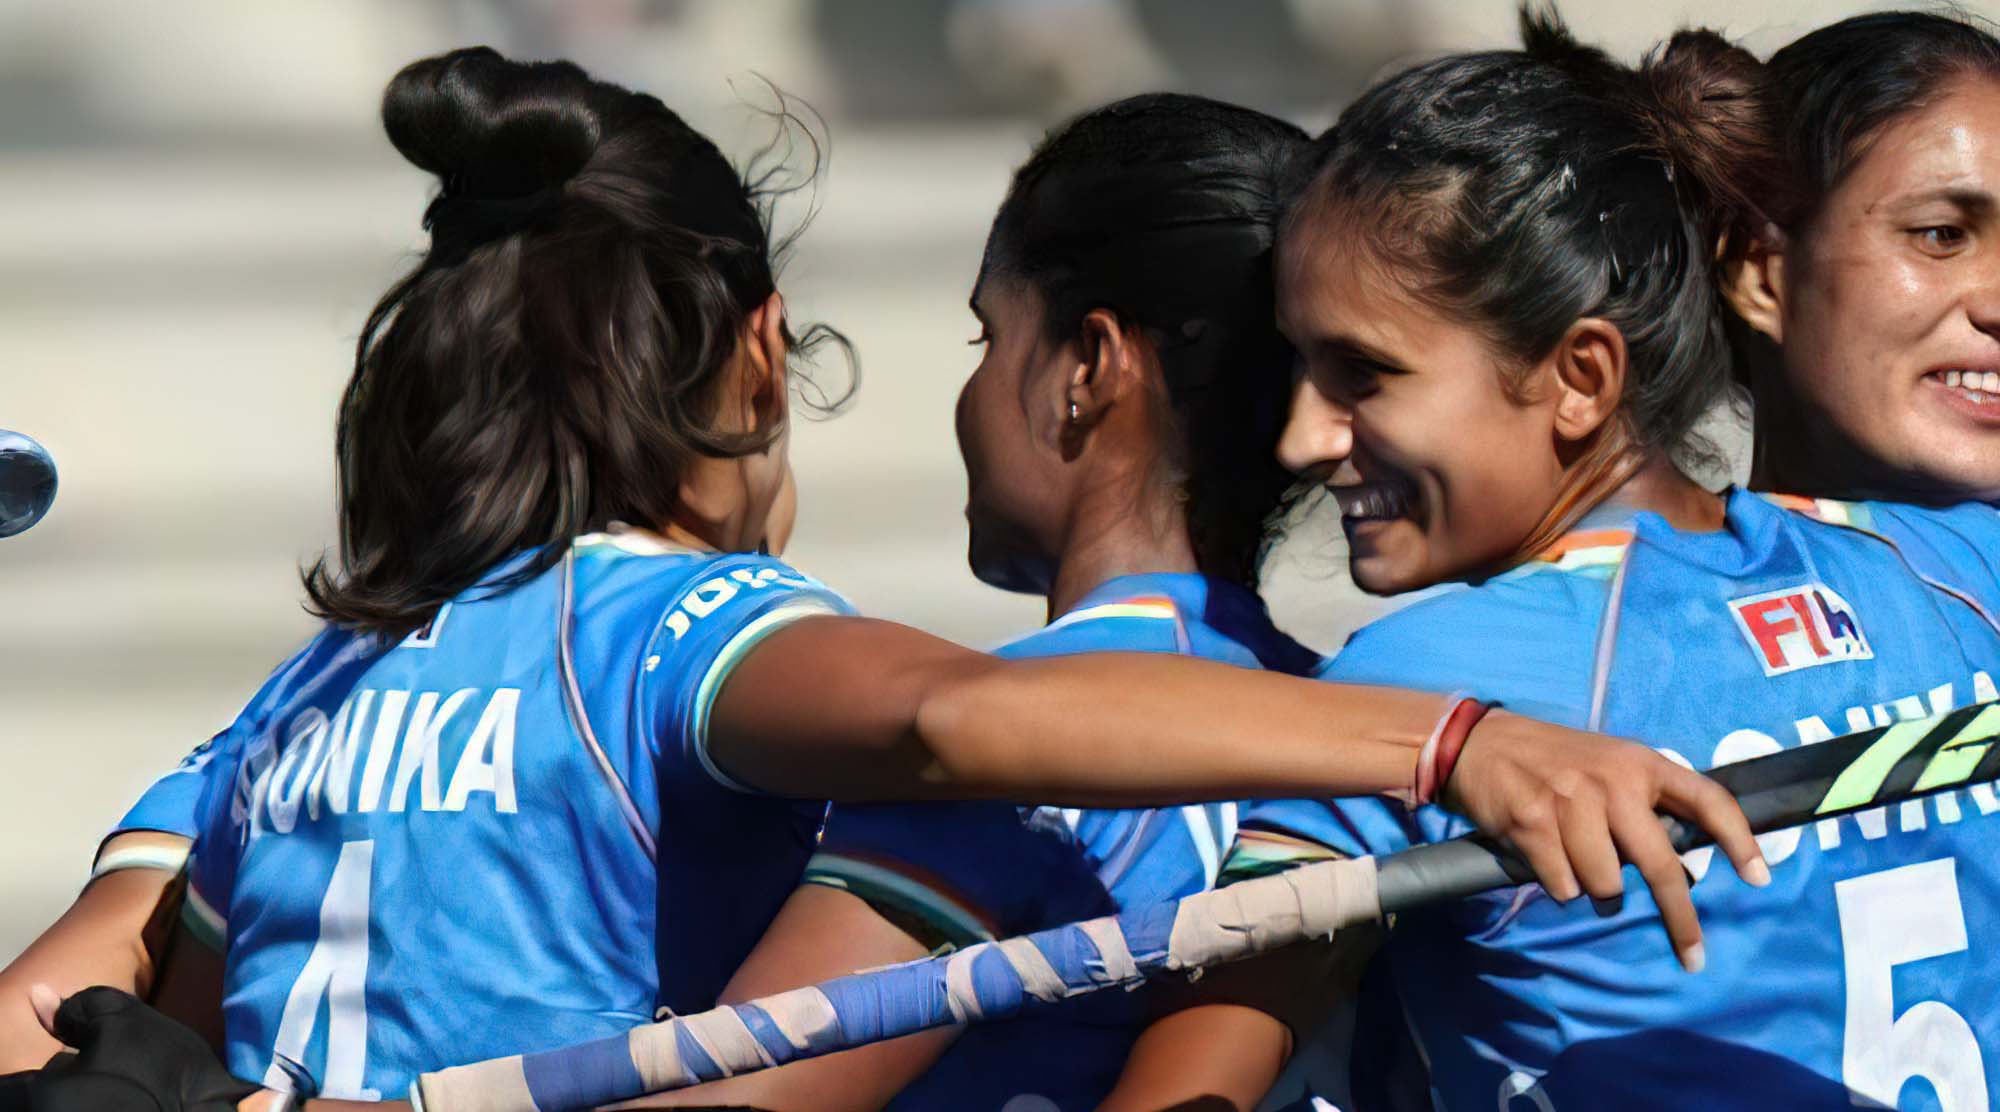 Hockey : भारतीय महिला हॉकी टीम ने इंग्लैंड को 6-2 से हराया